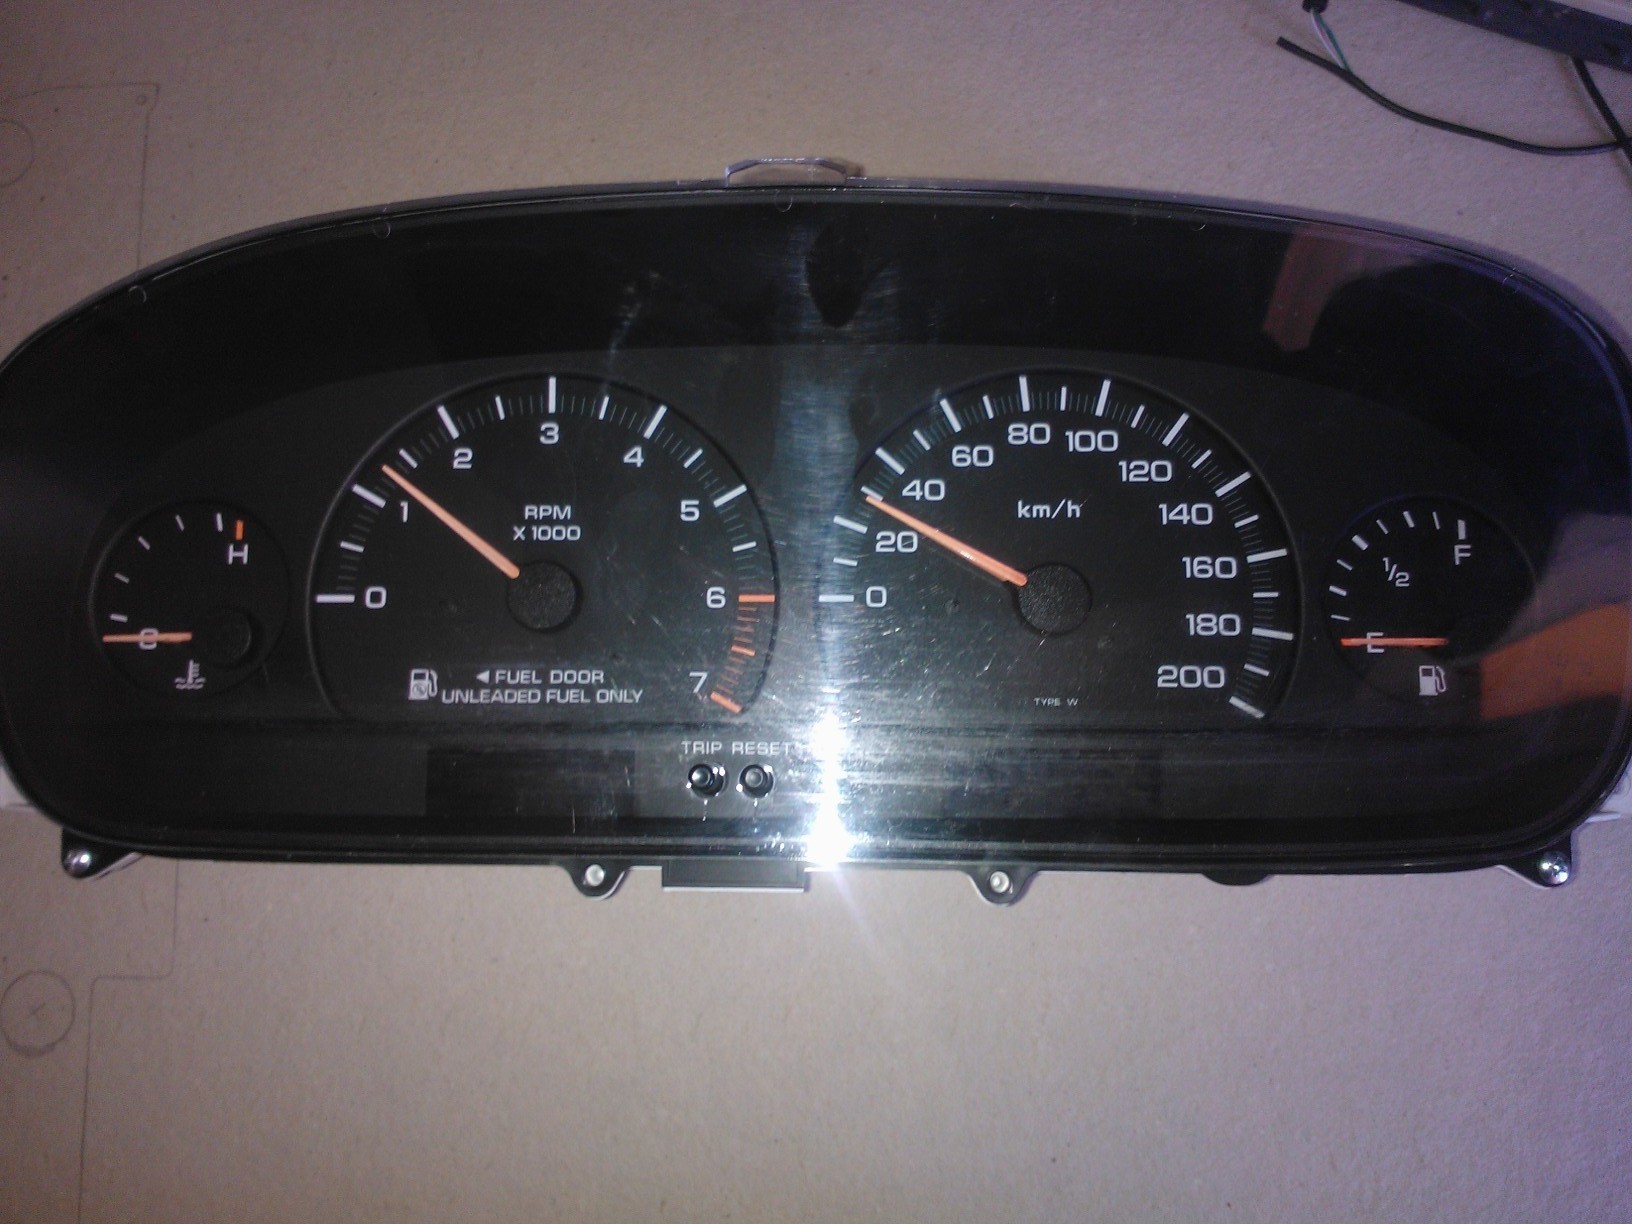 Chrysler Voyager 3.8L AWD '96 naprawa gasnących zegarów